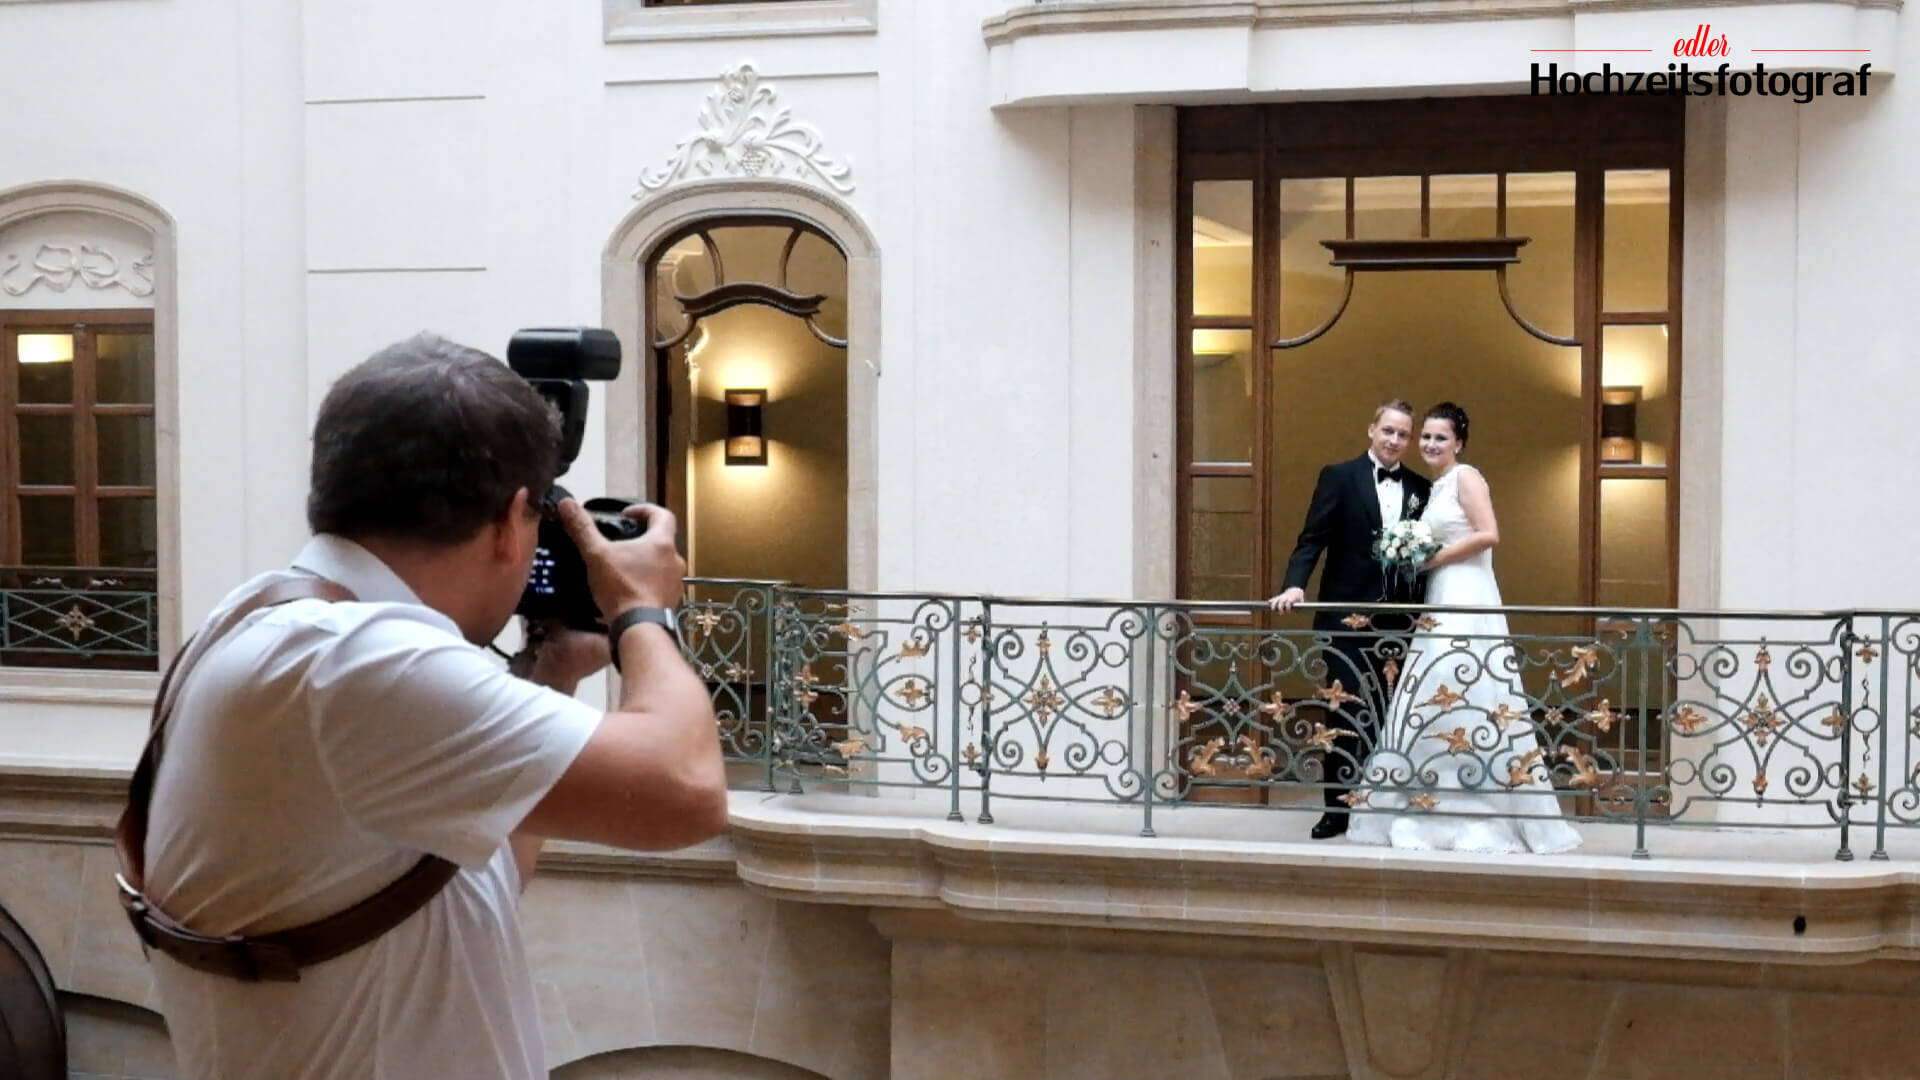 making of - edler hochzeitsfotograf beim fotografieren einer Hochzeit